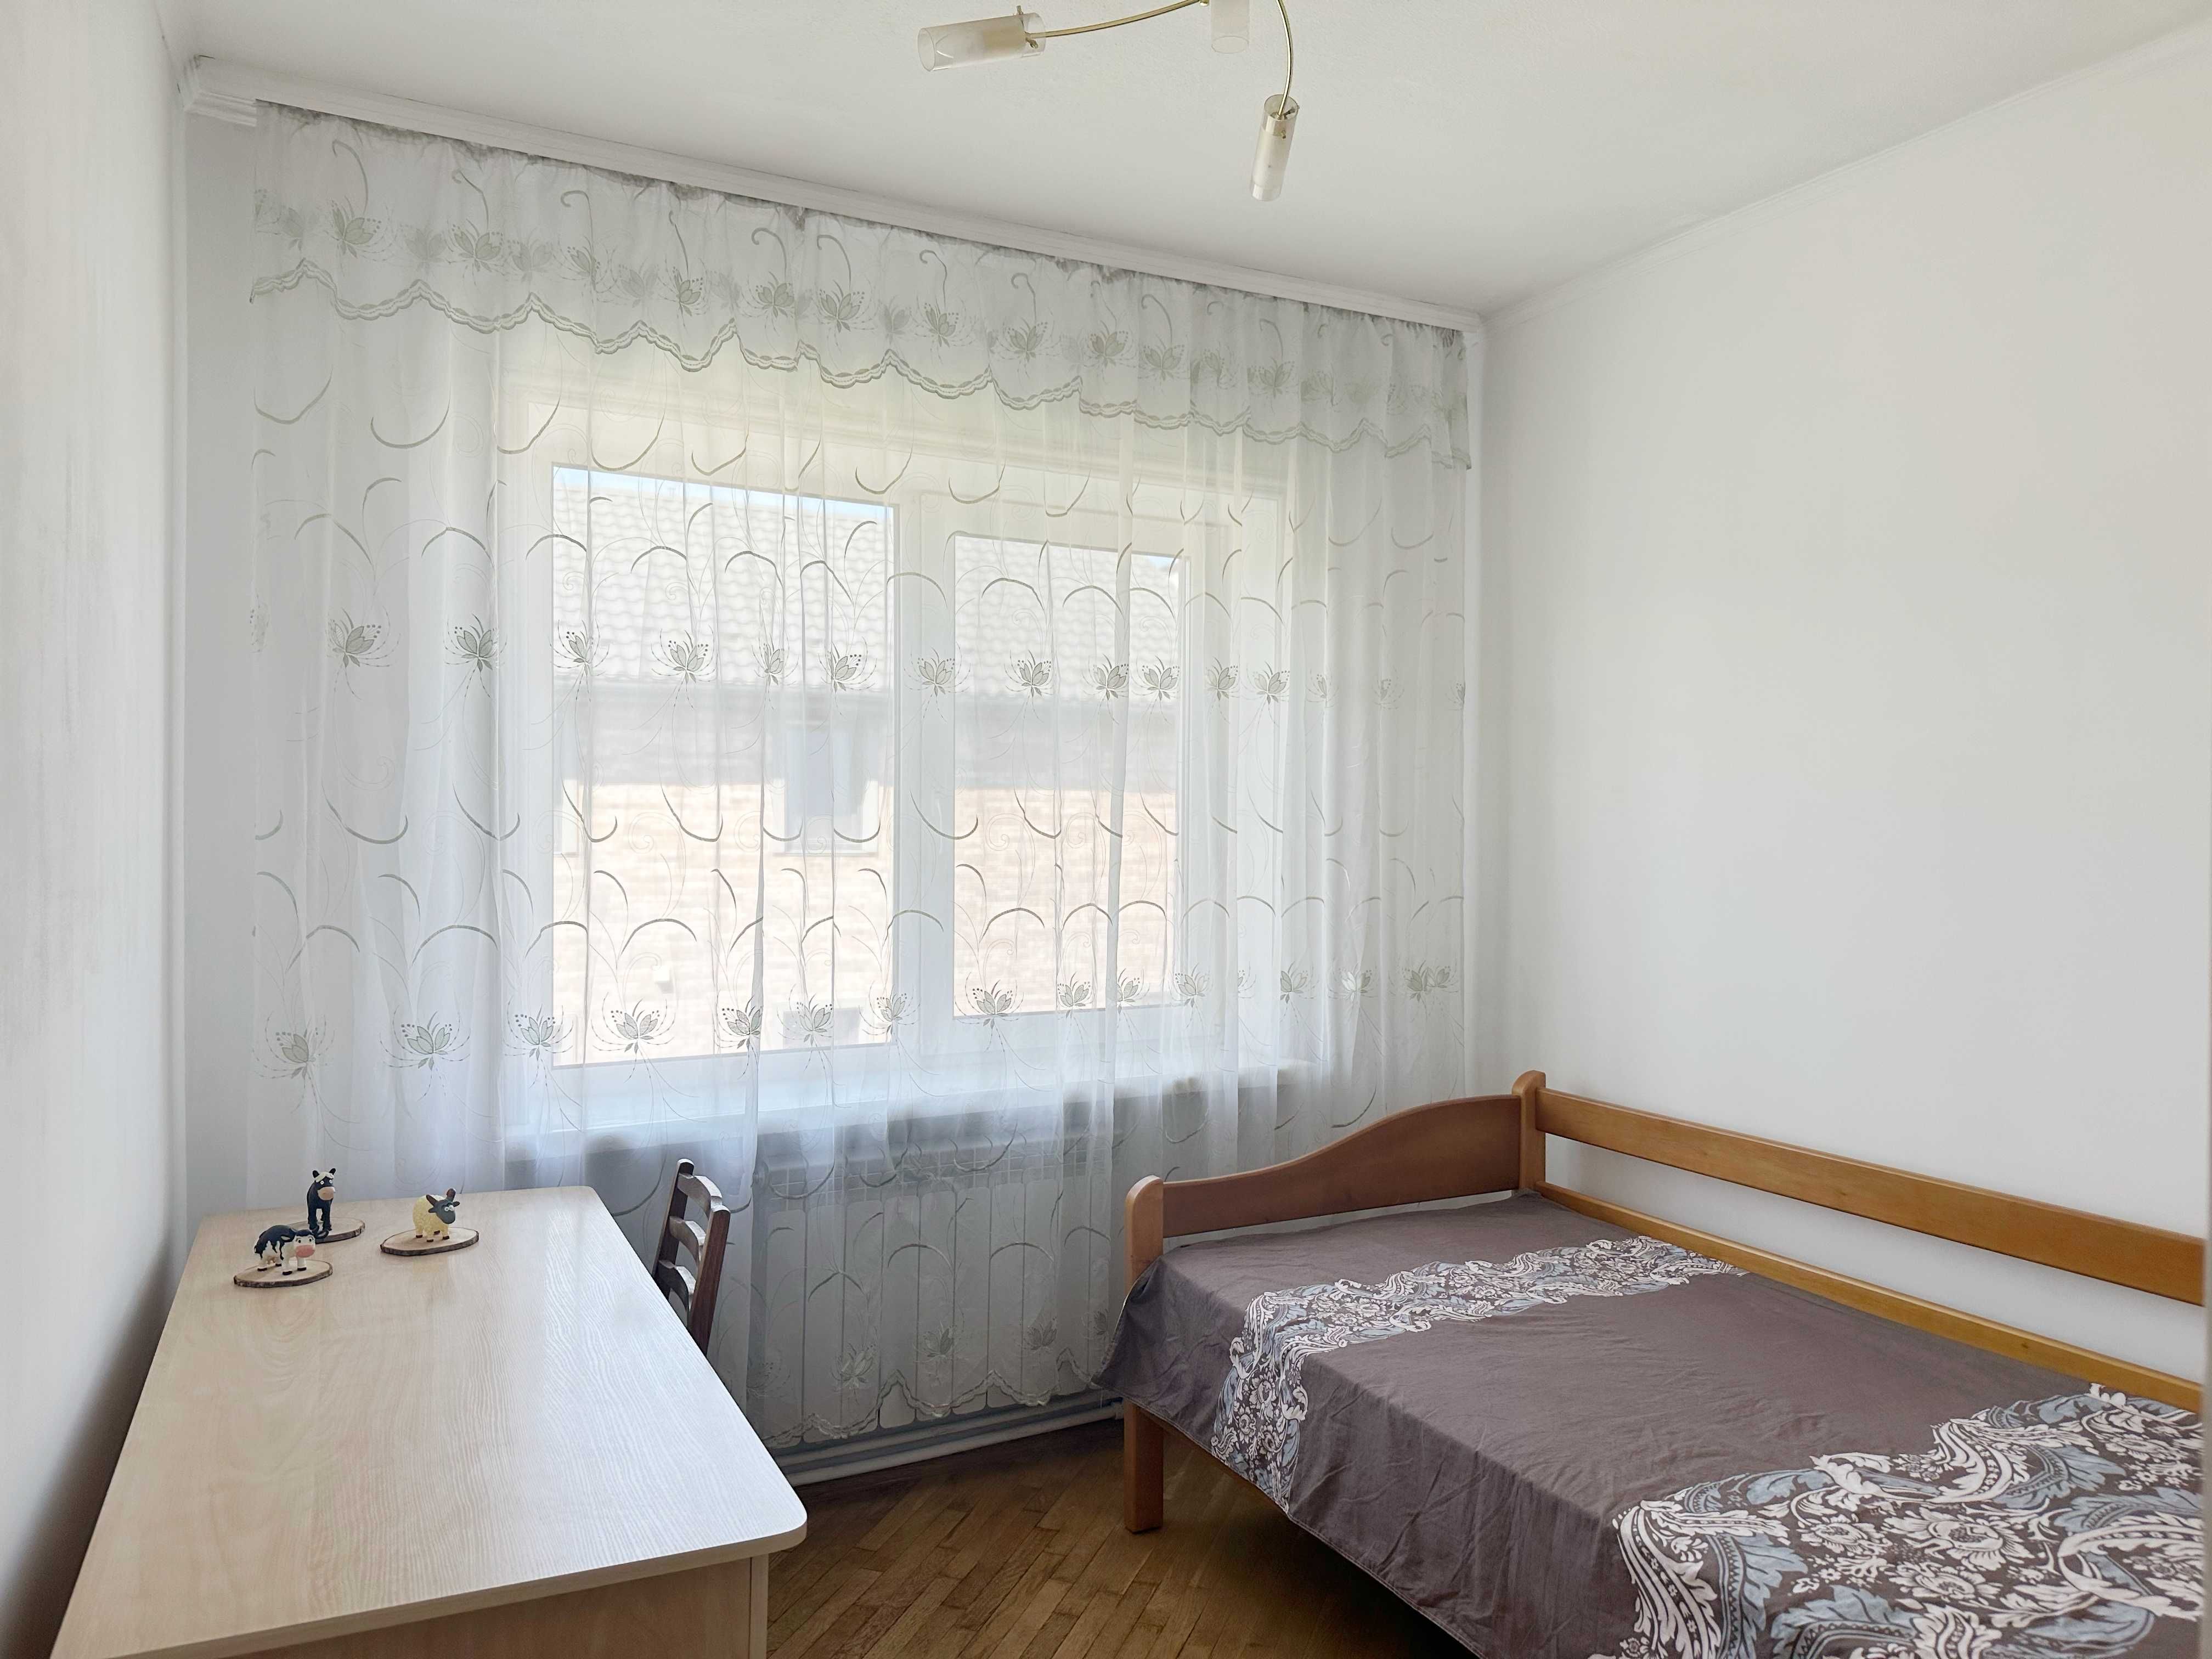 Продам приватний будинок в тихому районі Ірпеня, зручний виіздна Київ!